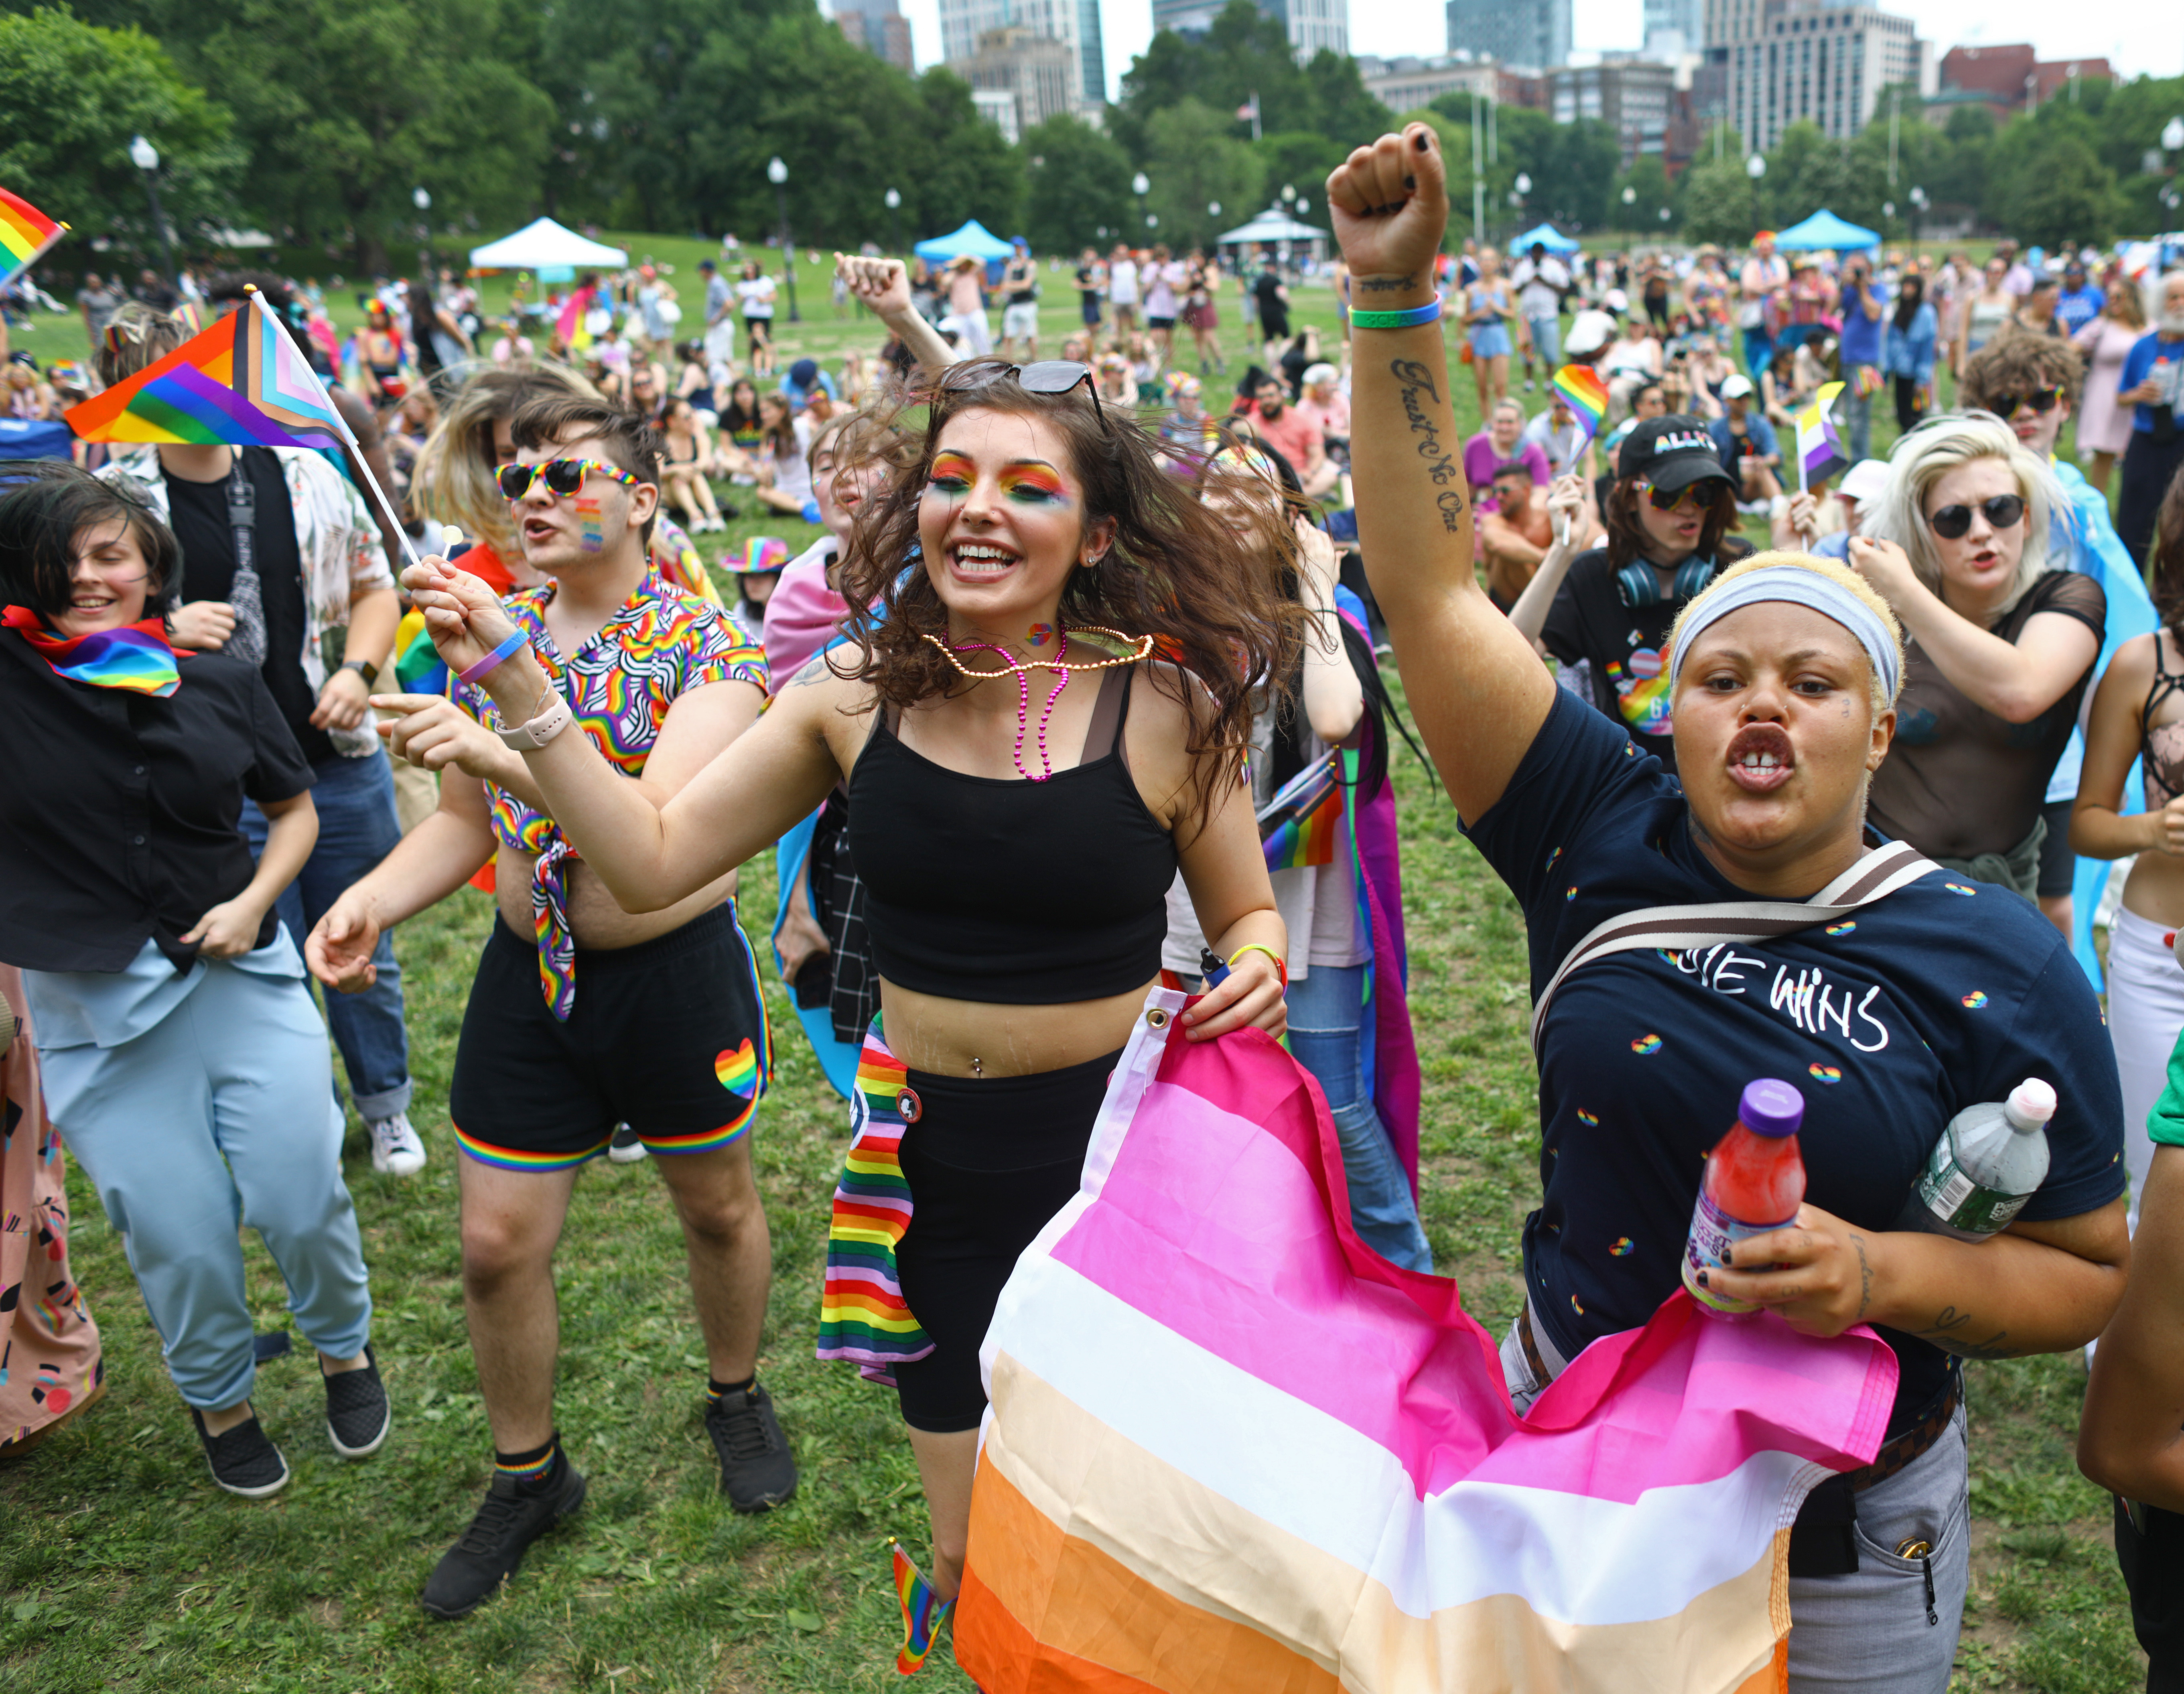 2023 Boston Pride Parade: So much fun